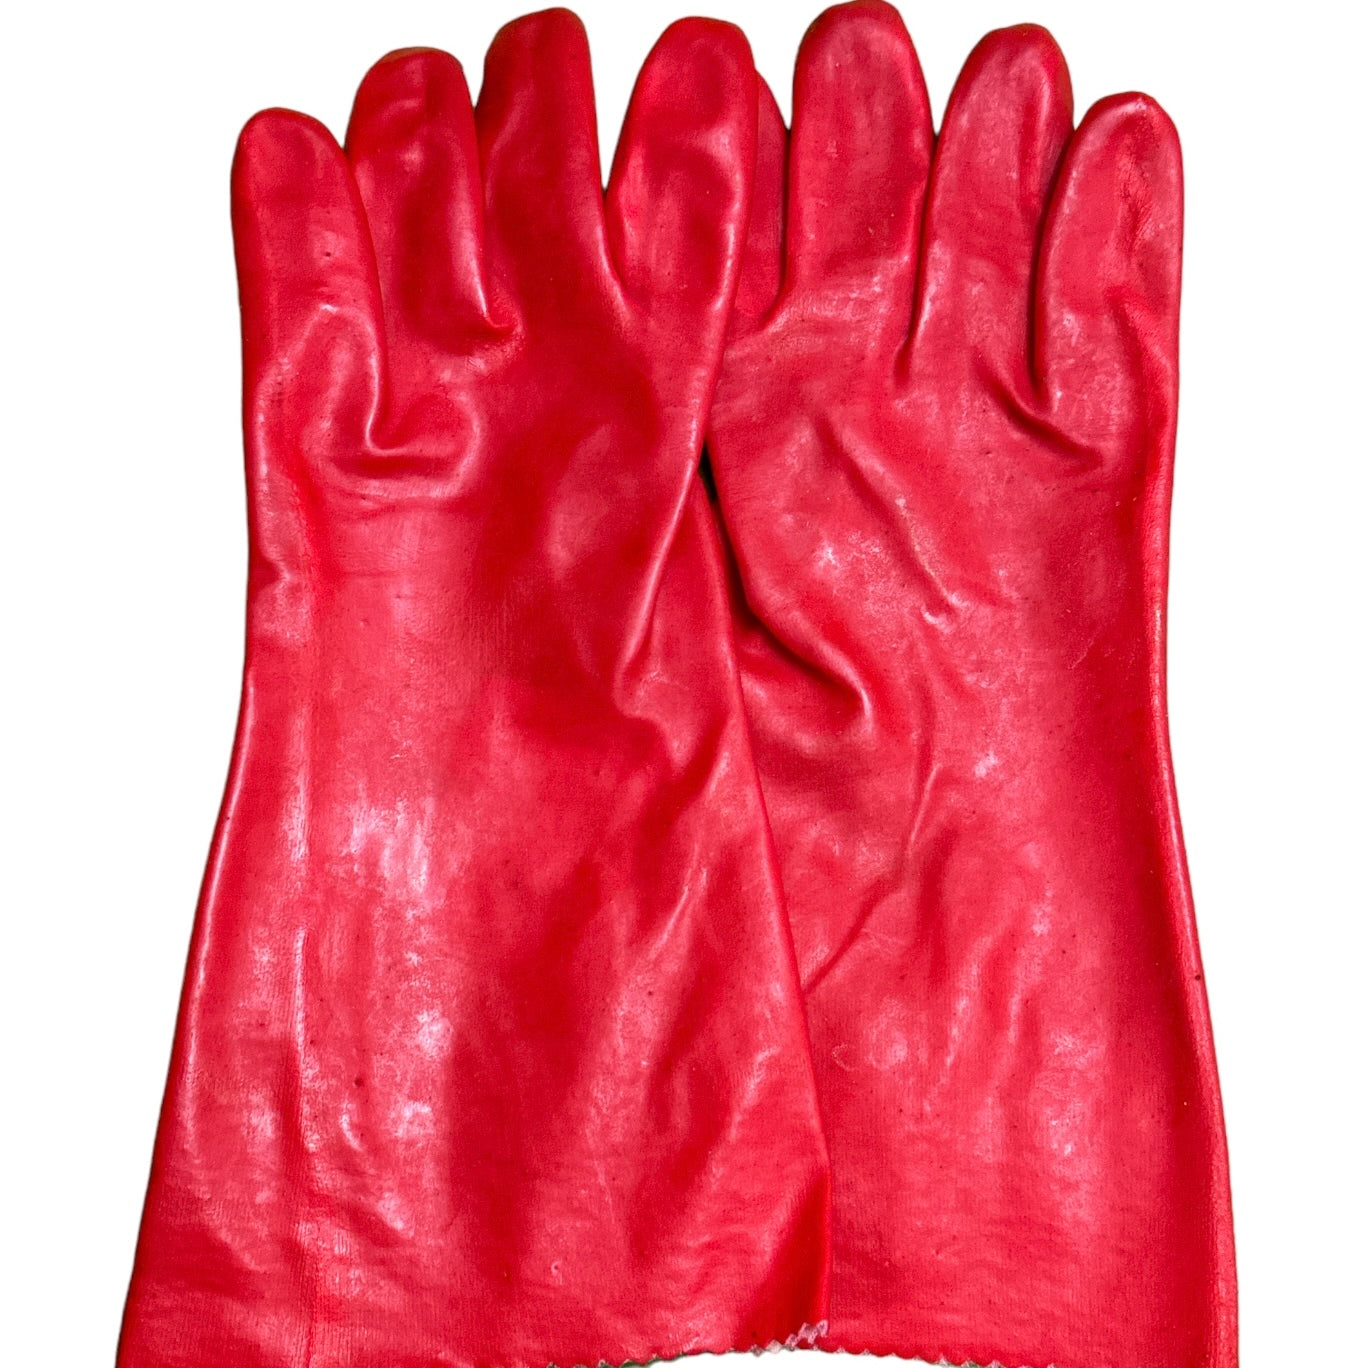 Mănuși de protecție din PVC lungi